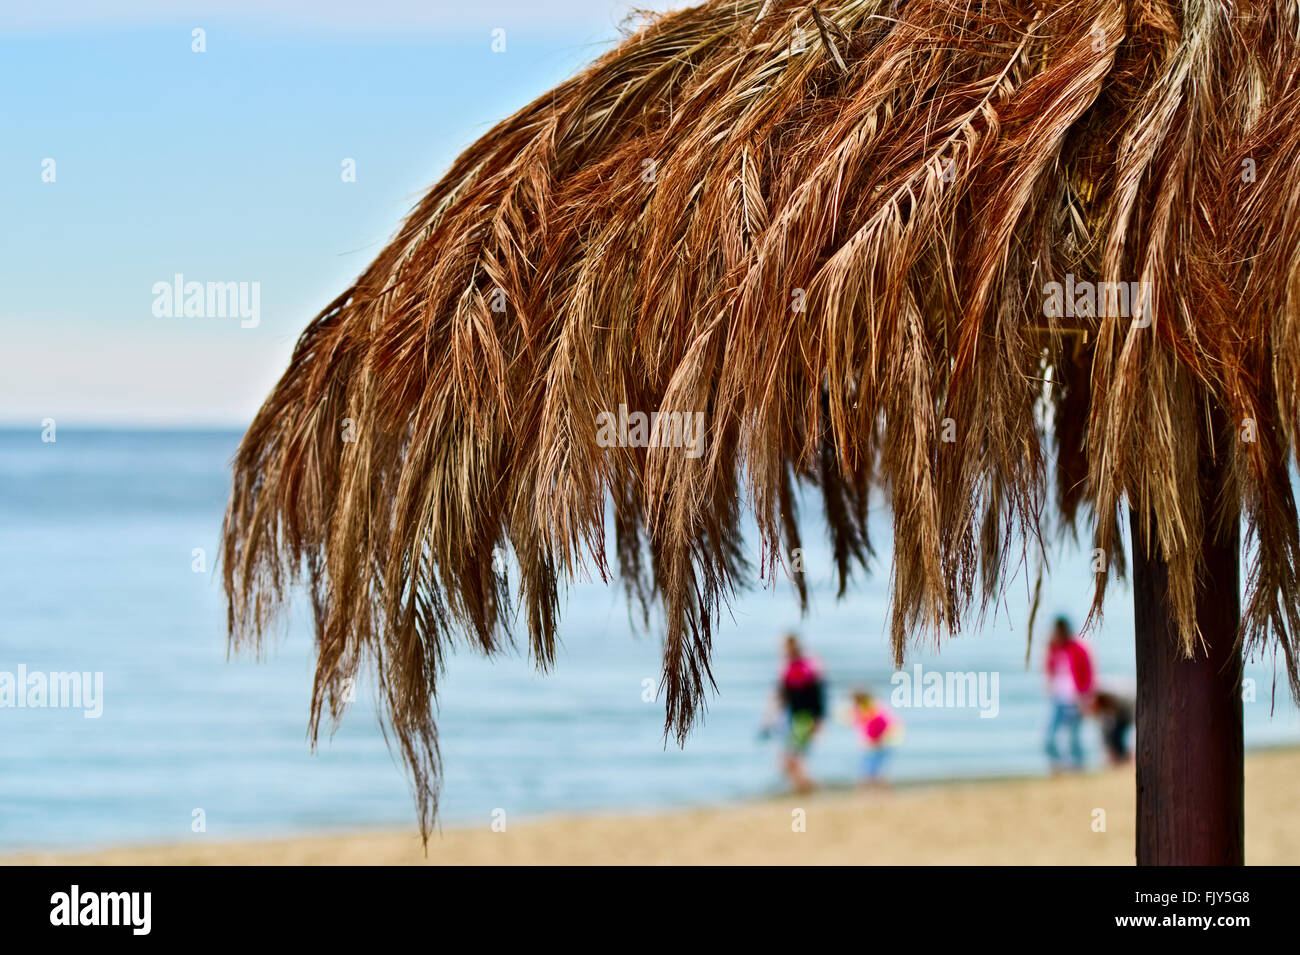 La feuille de palmier parasol sur la plage de la mer Baltique. Stegna,  Poméranie, Pologne Photo Stock - Alamy